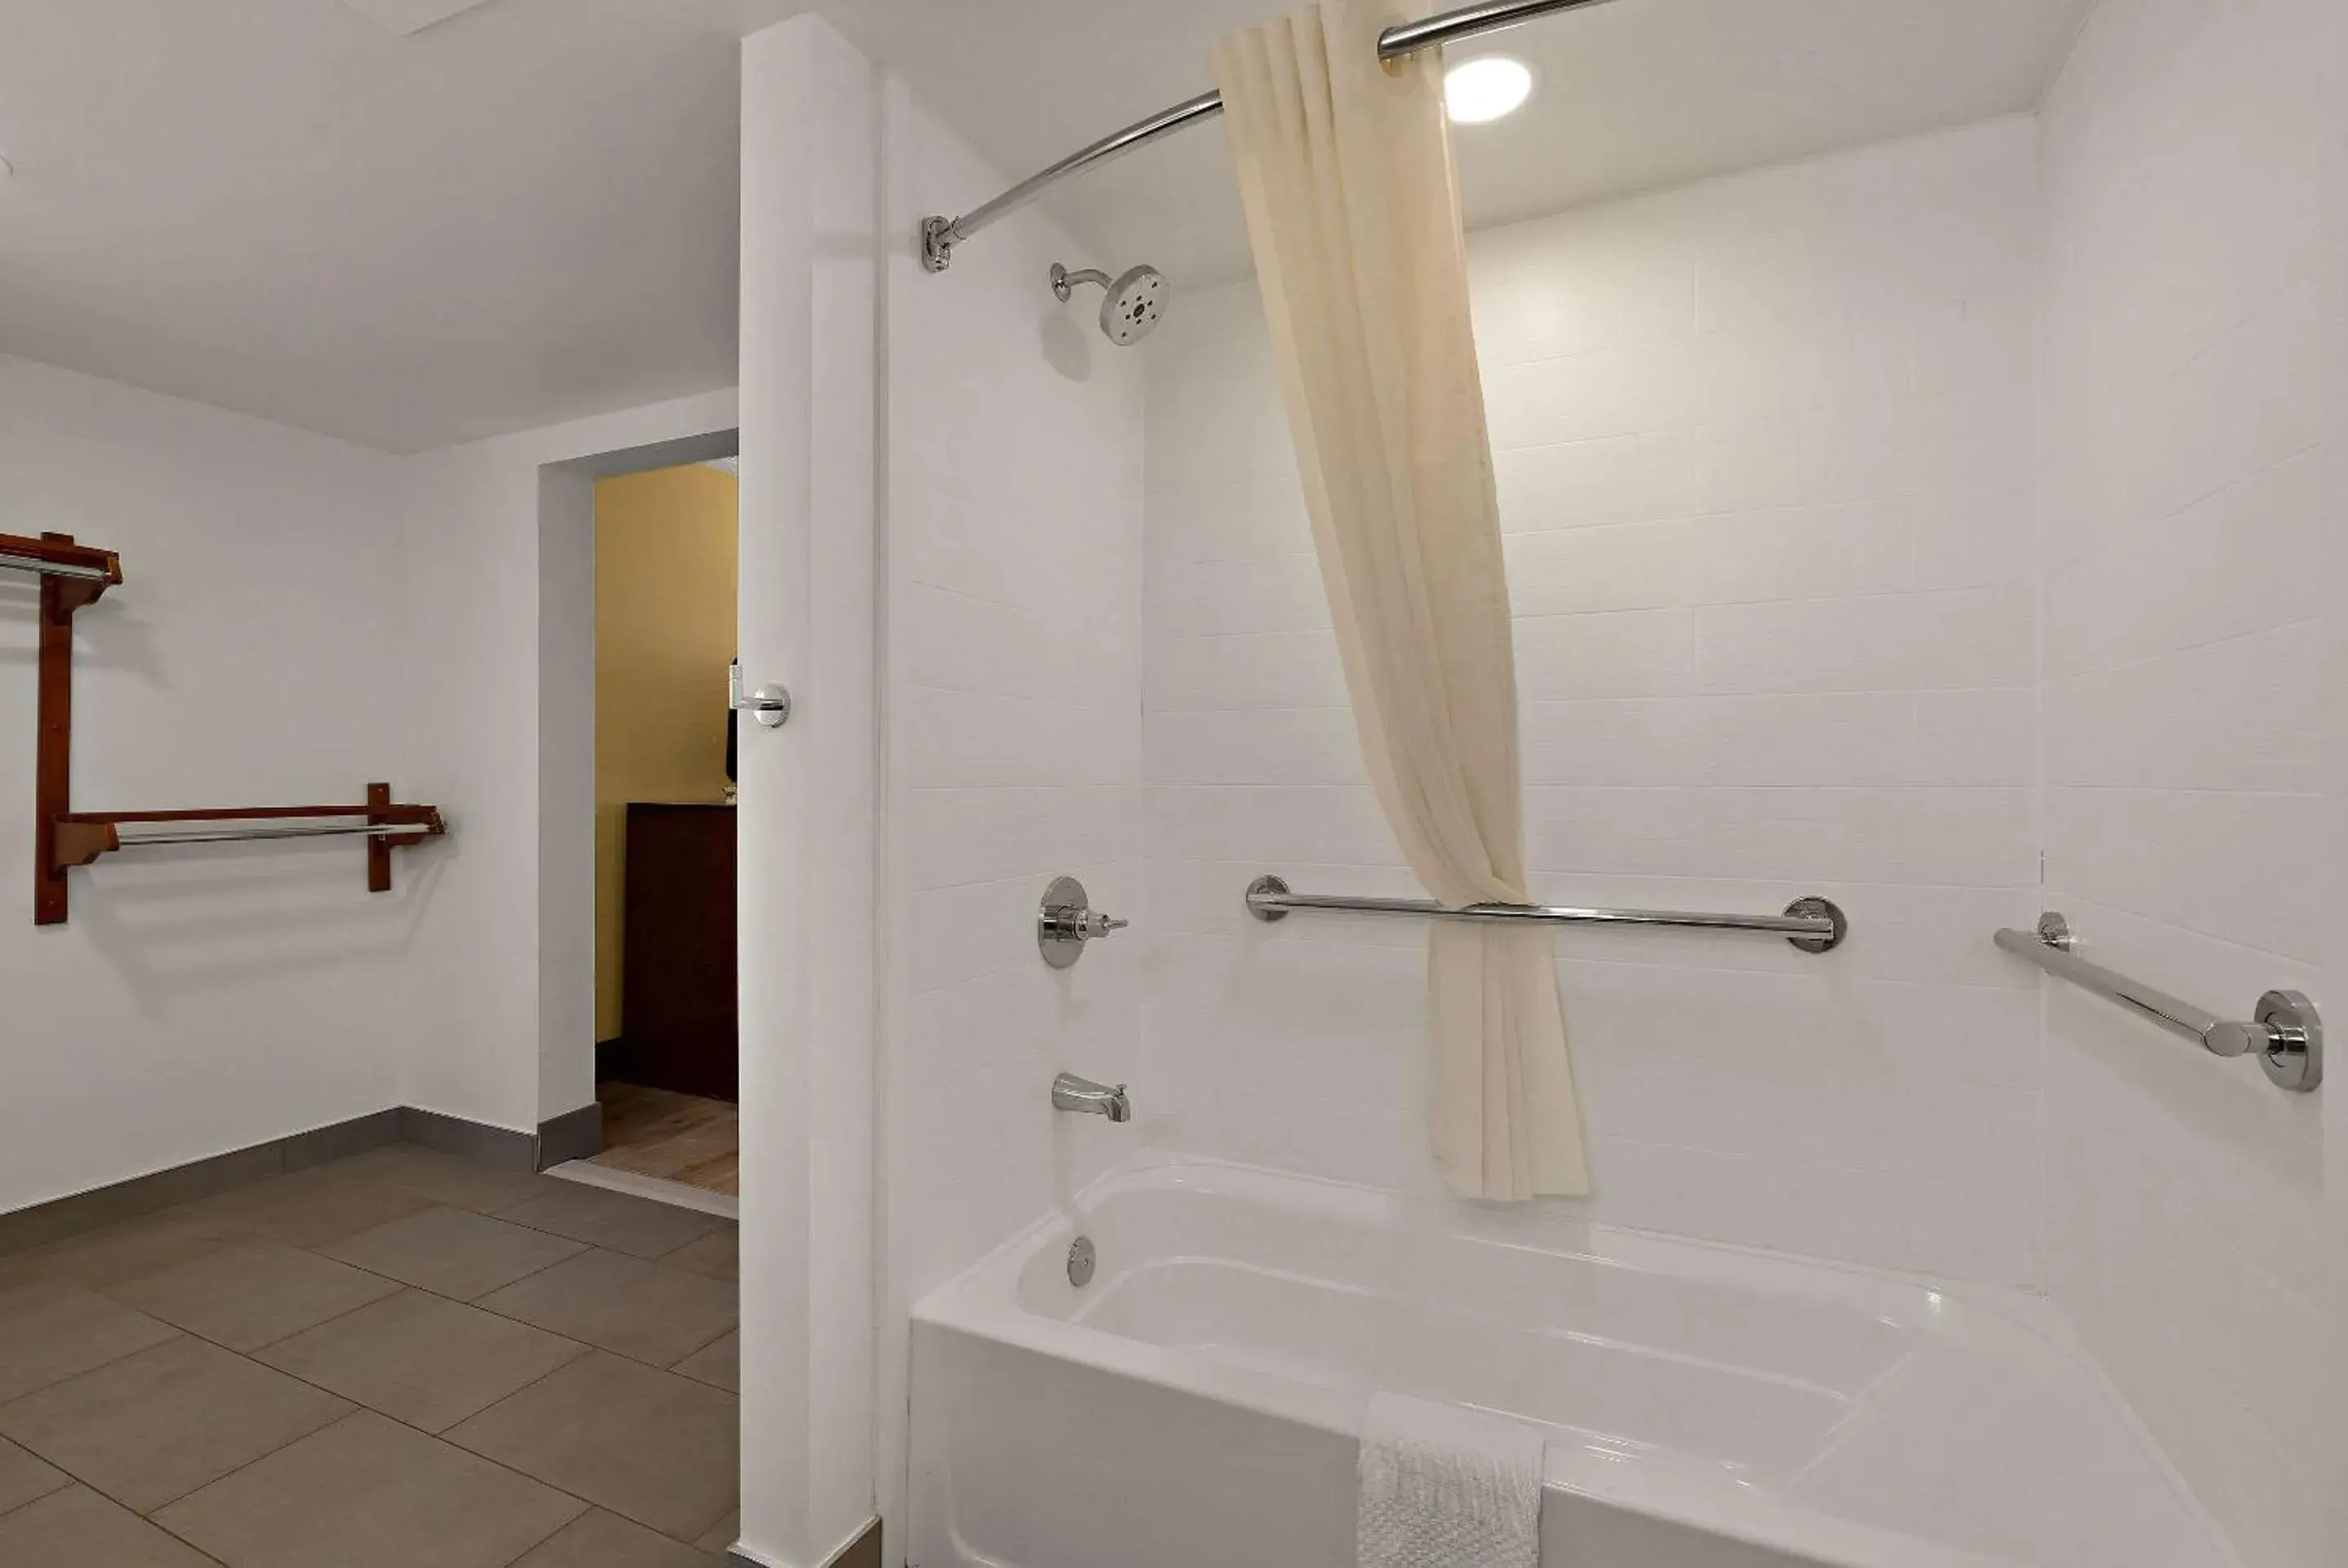 Bedroom, Bathroom in Econo Lodge Flagstaff Route 66